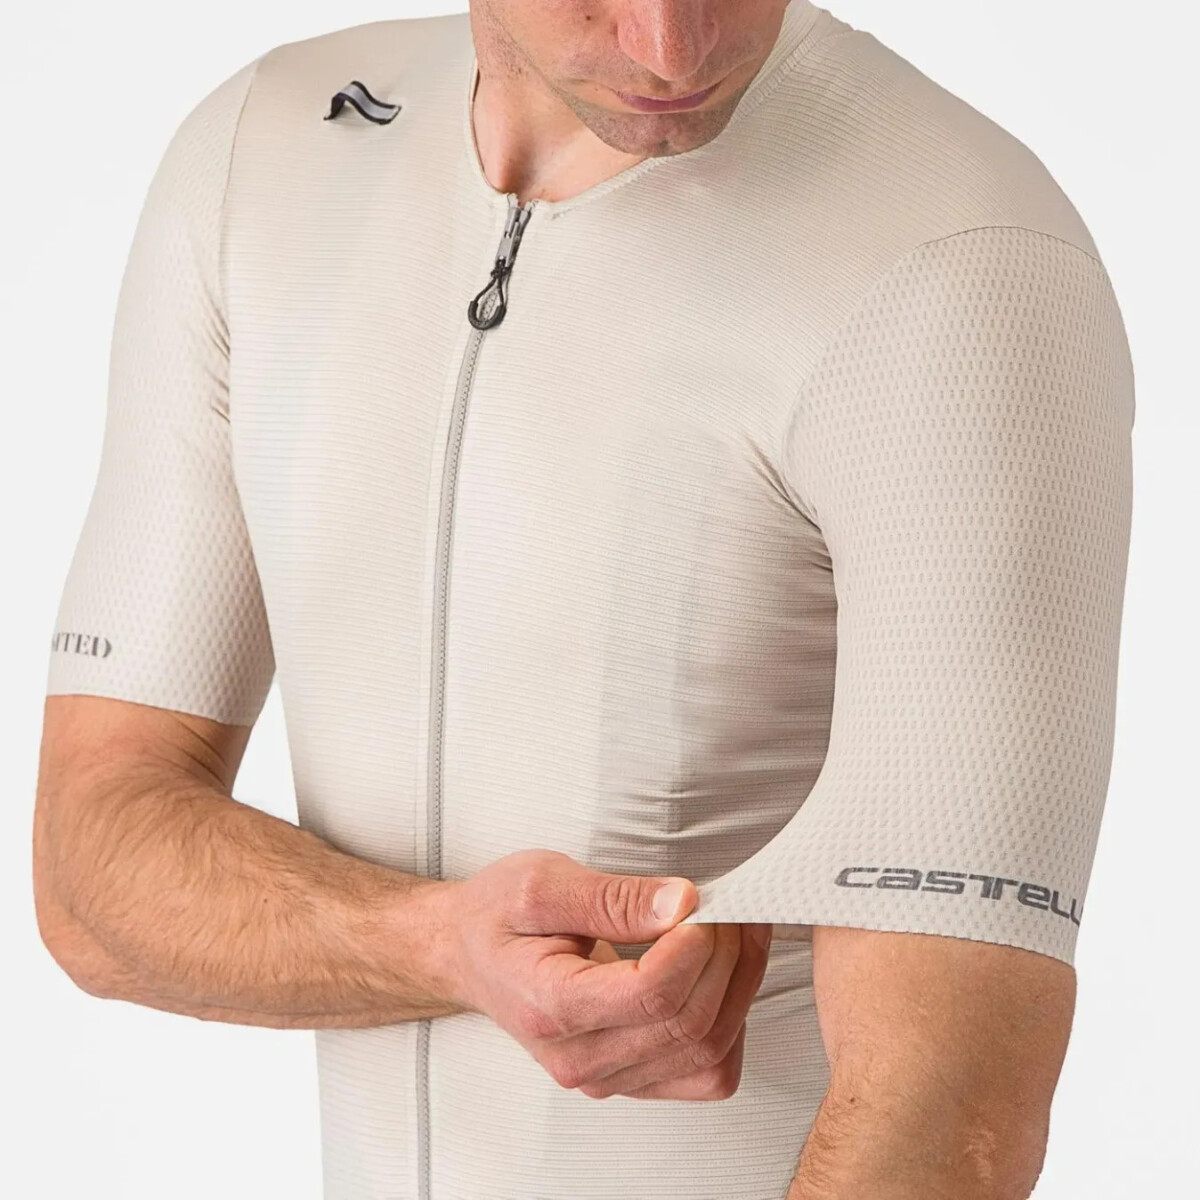 girodociclismo.com.br tradicional fabricante apresenta inovadora camisa com compartimento para bolsa de agua confira o preco image 1